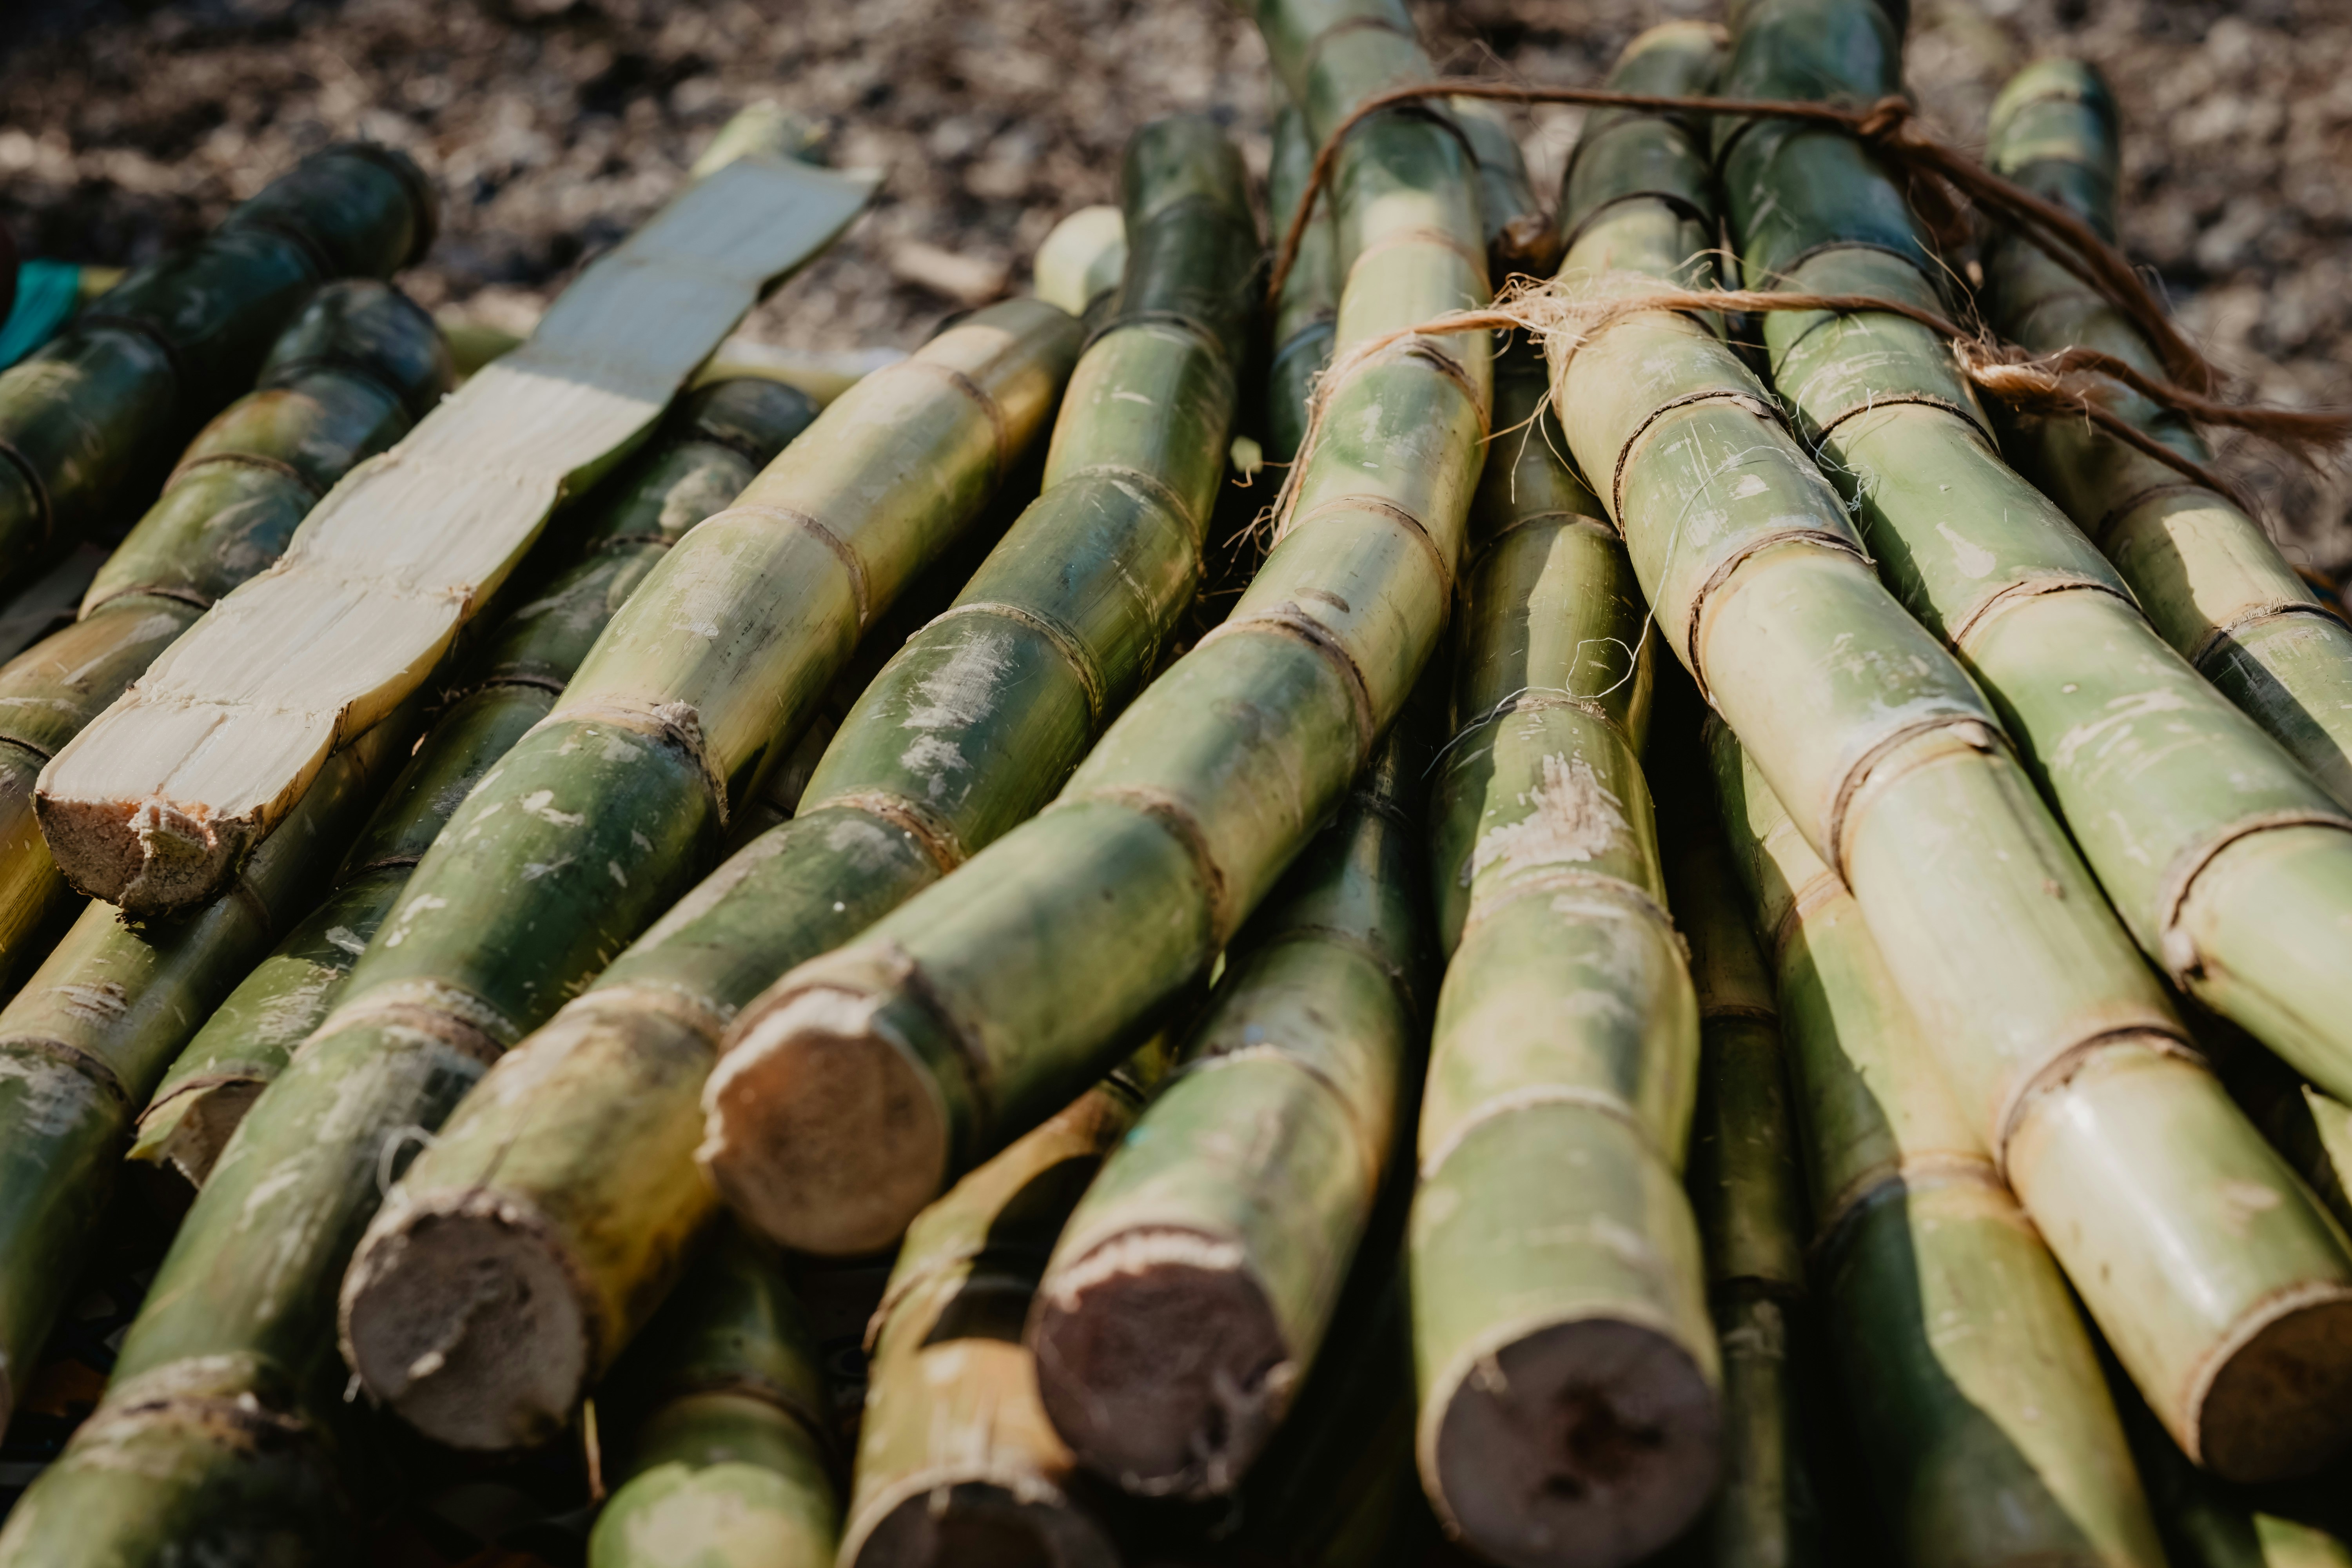 Sugar industries facing sugarcane shortage